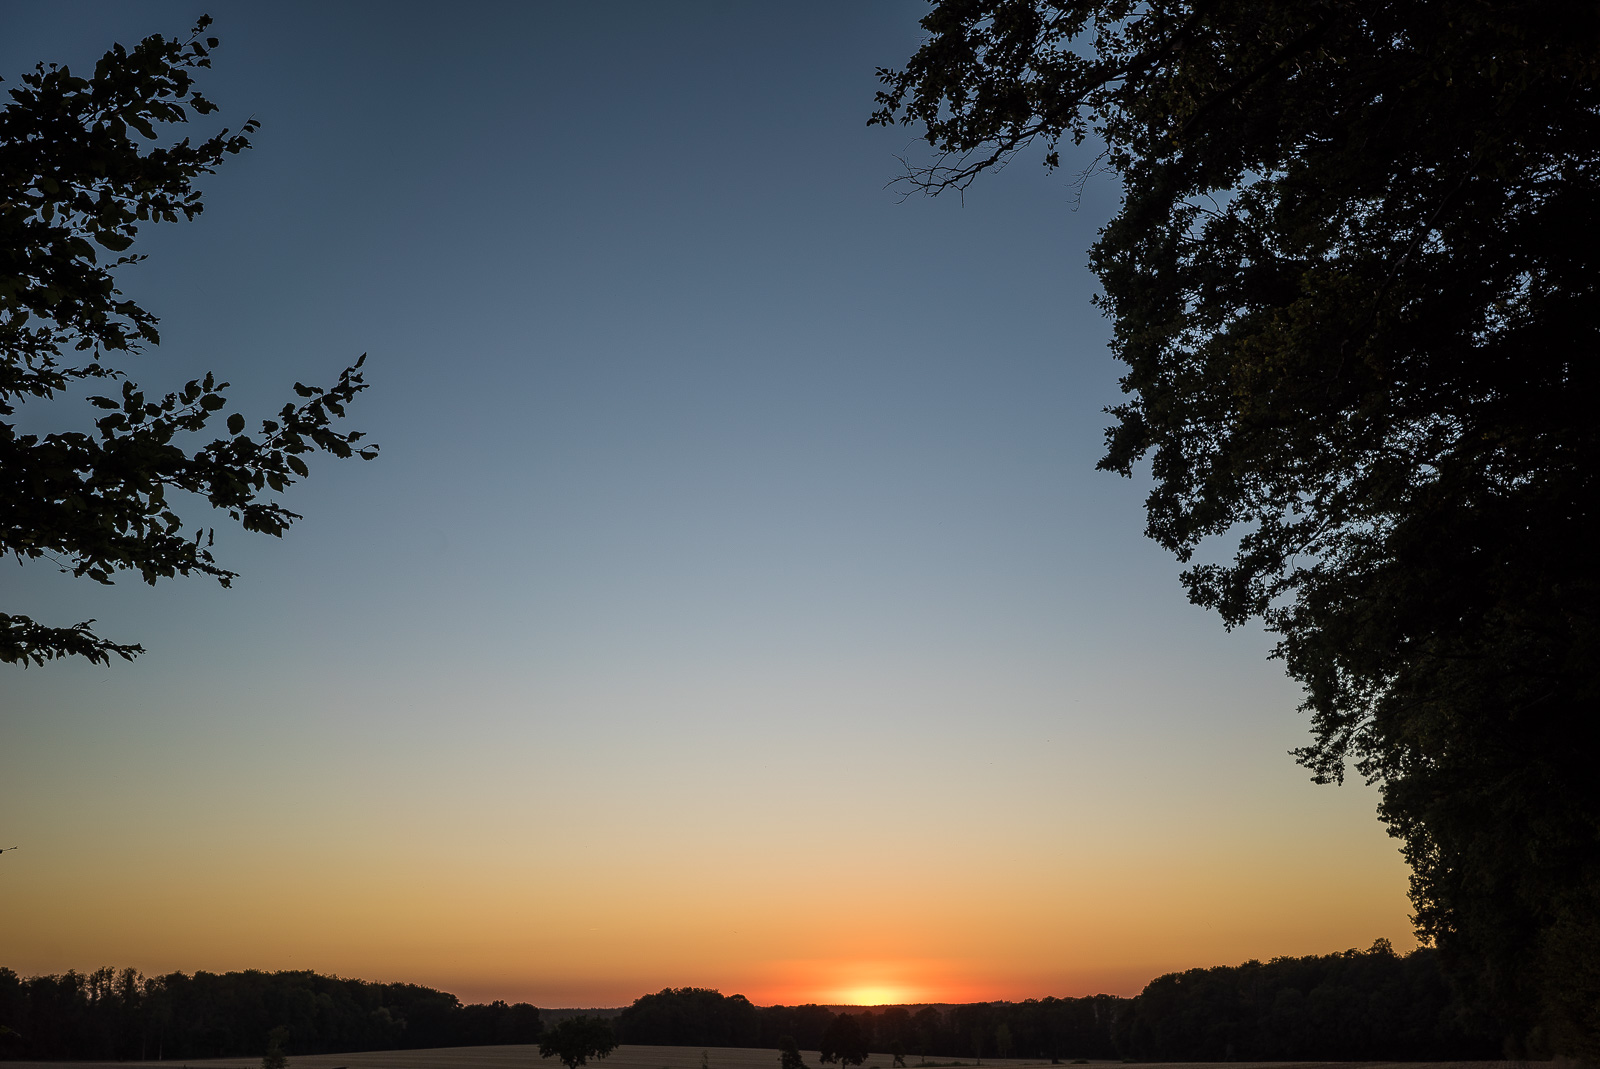 Ein klarer blauer AbendHimmel, der nach unten hin orange wird. Am unteren BildRand ein dunkler Horizont und ein Rest der Sonne. Links und rechts ist das Bild von Baum-Silhouetten eingefasst.